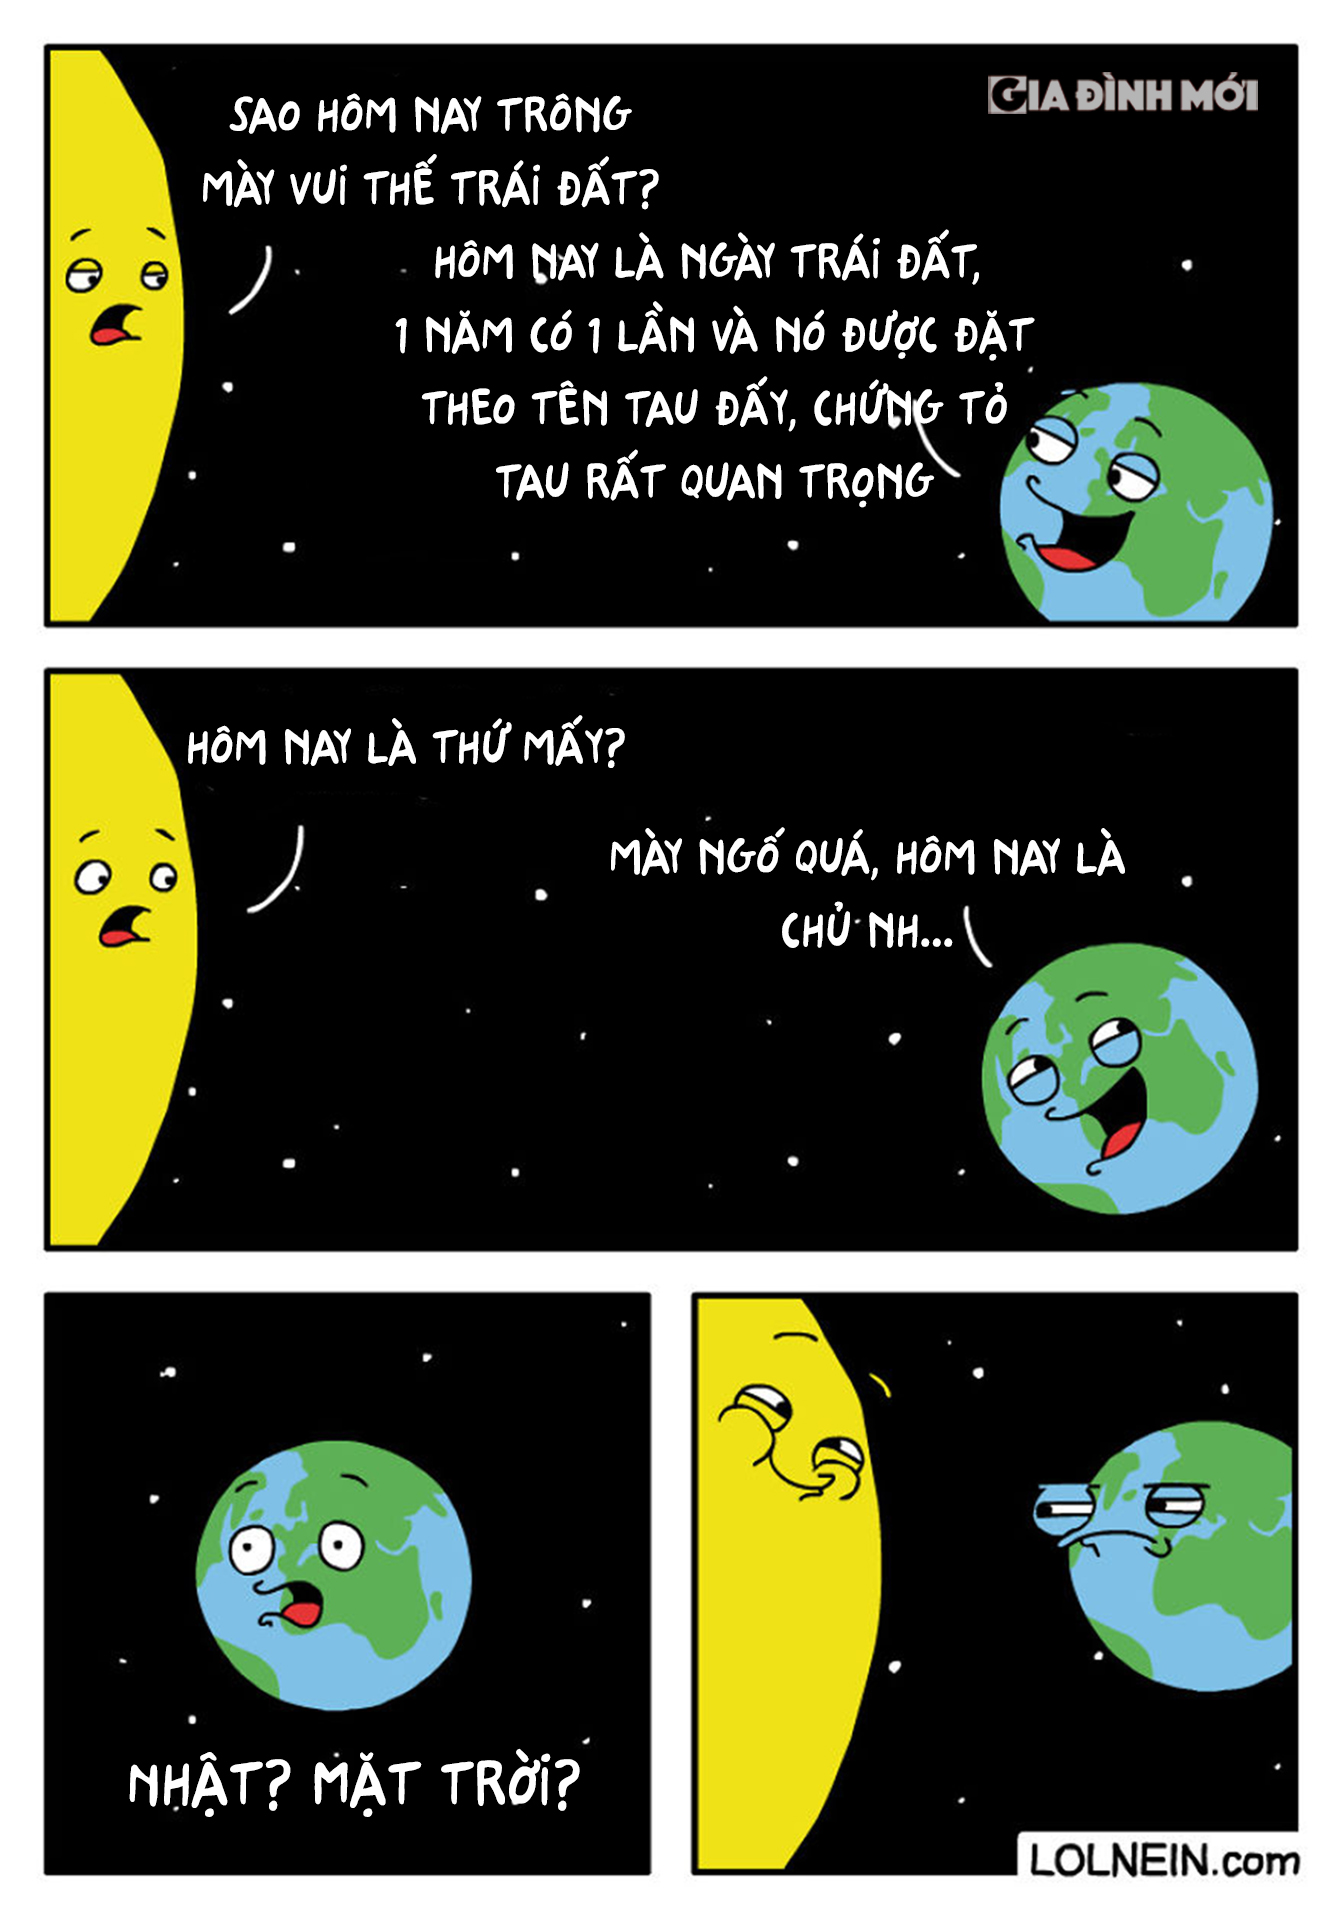 Cuộc nói chuyện giữa Trái Đất và Mặt Trời xem ai quan trọng hơn